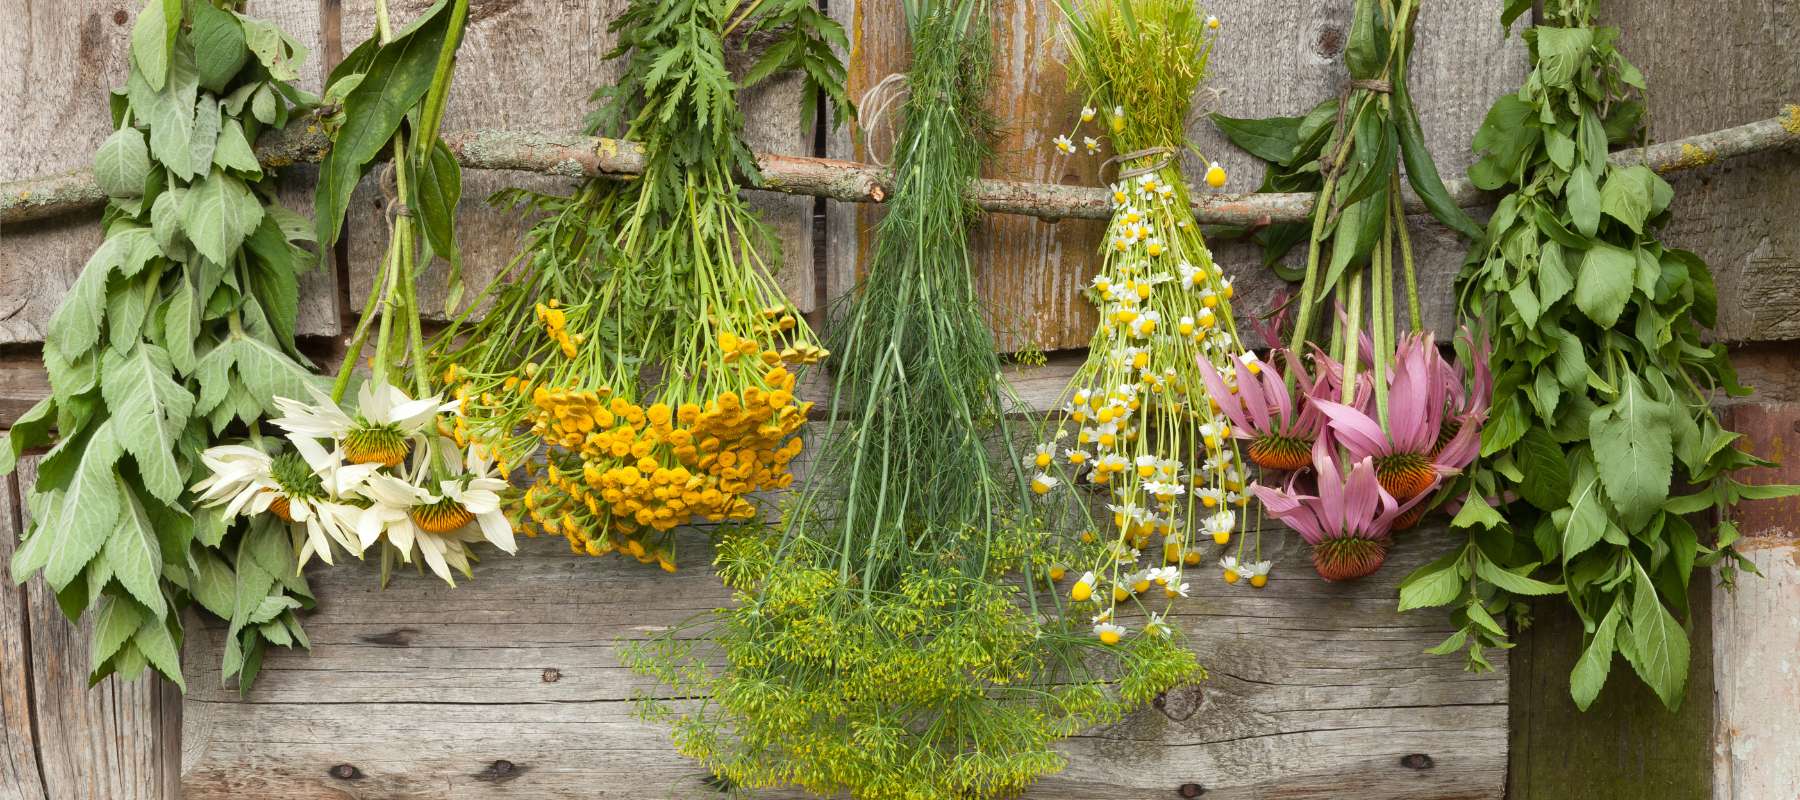 10 Medicinal Herbs You Should Grow